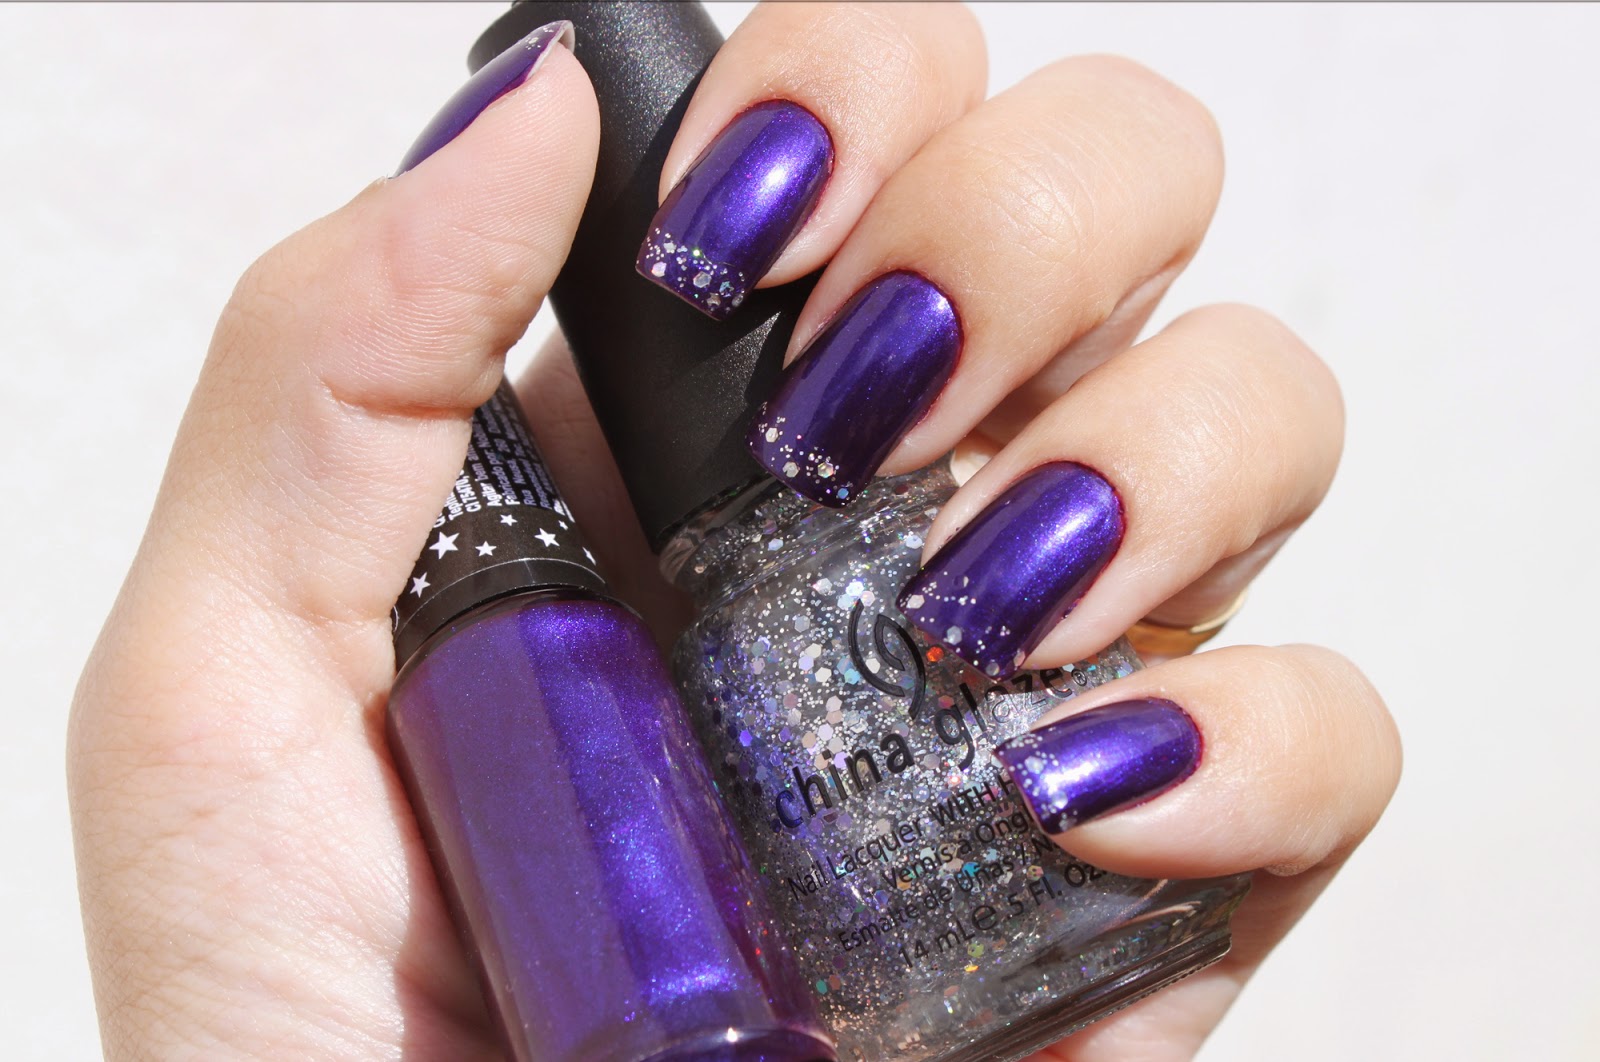 2. Trendy nail polish shades - wide 8